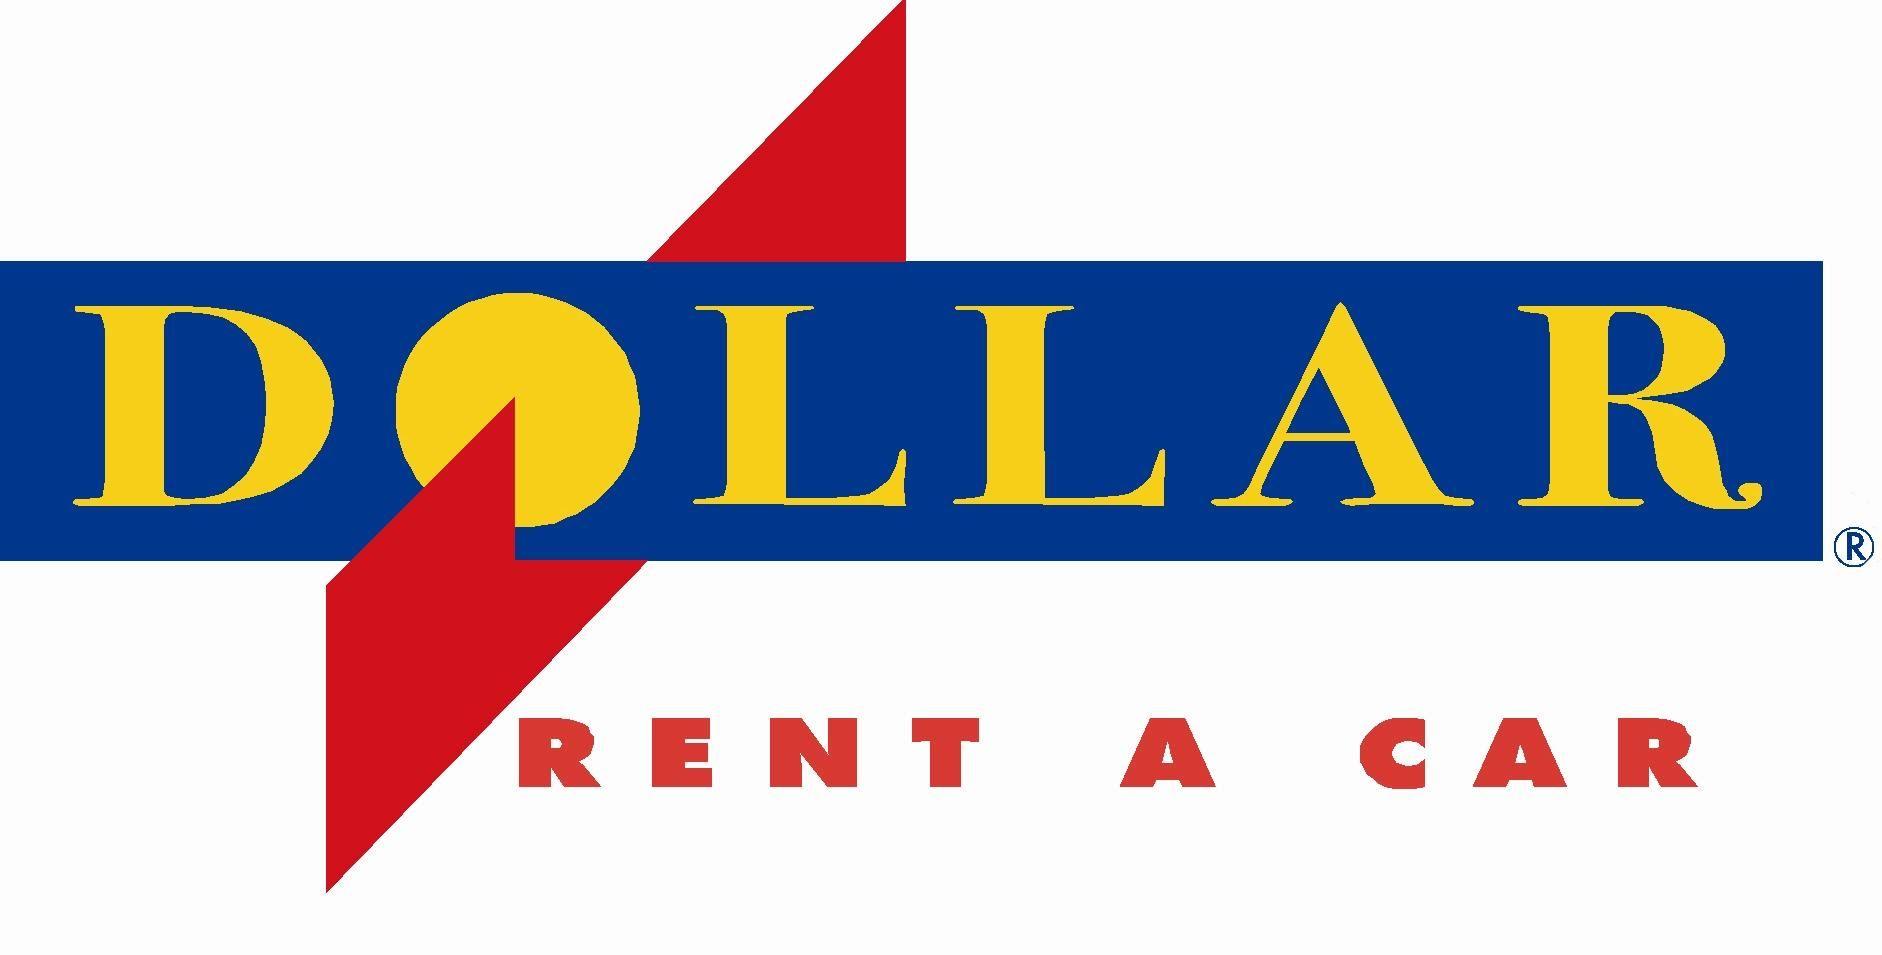 Dollar Car Rental Logo - Dollar Car Rental | Logopedia | FANDOM powered by Wikia